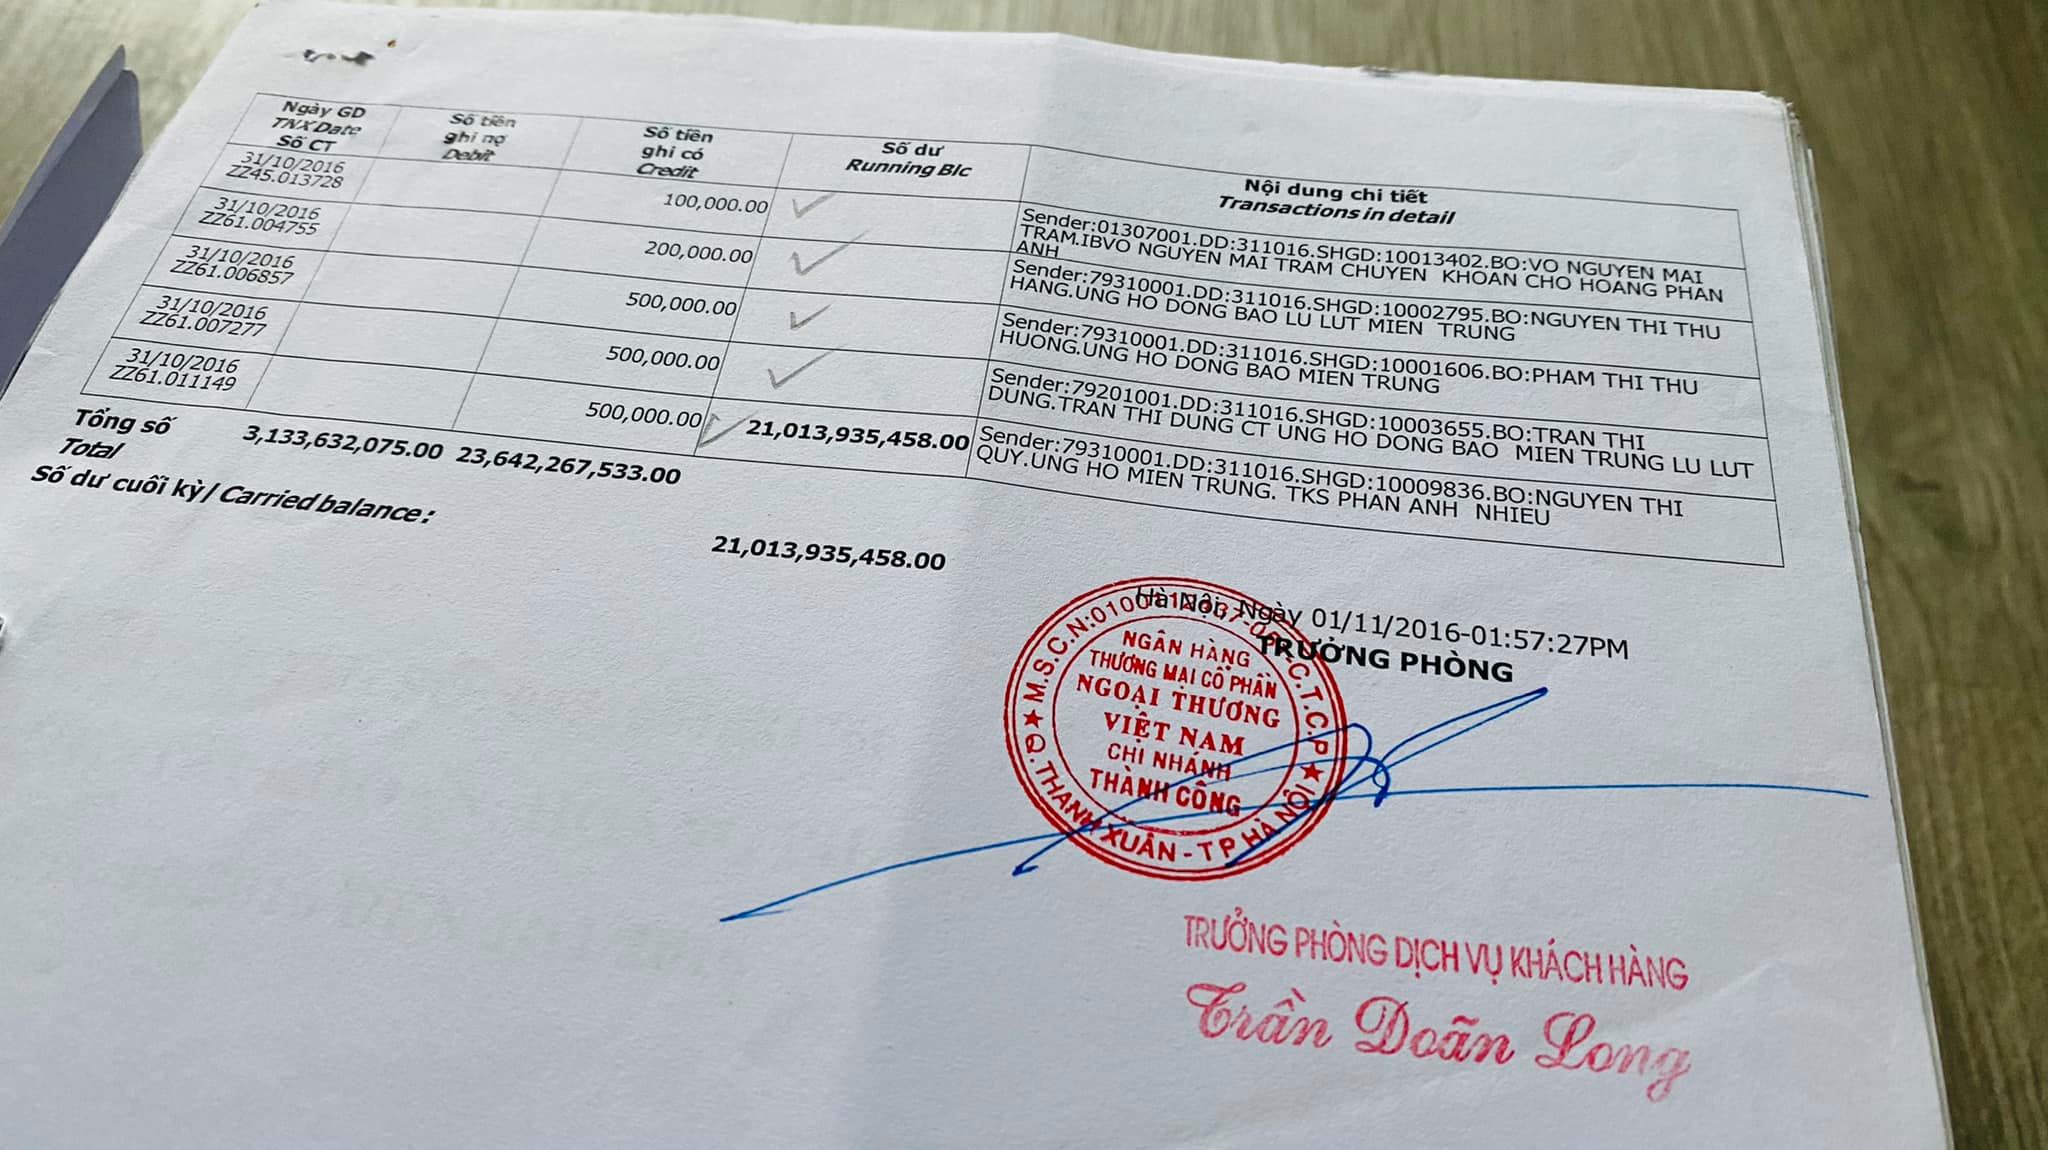 MC Phan Anh cung cấp giấy tờ chứng minh đã sao kê ngay thời điểm thông báo đóng tài khoản vào lúc 13h57 ngày 1/11/2016